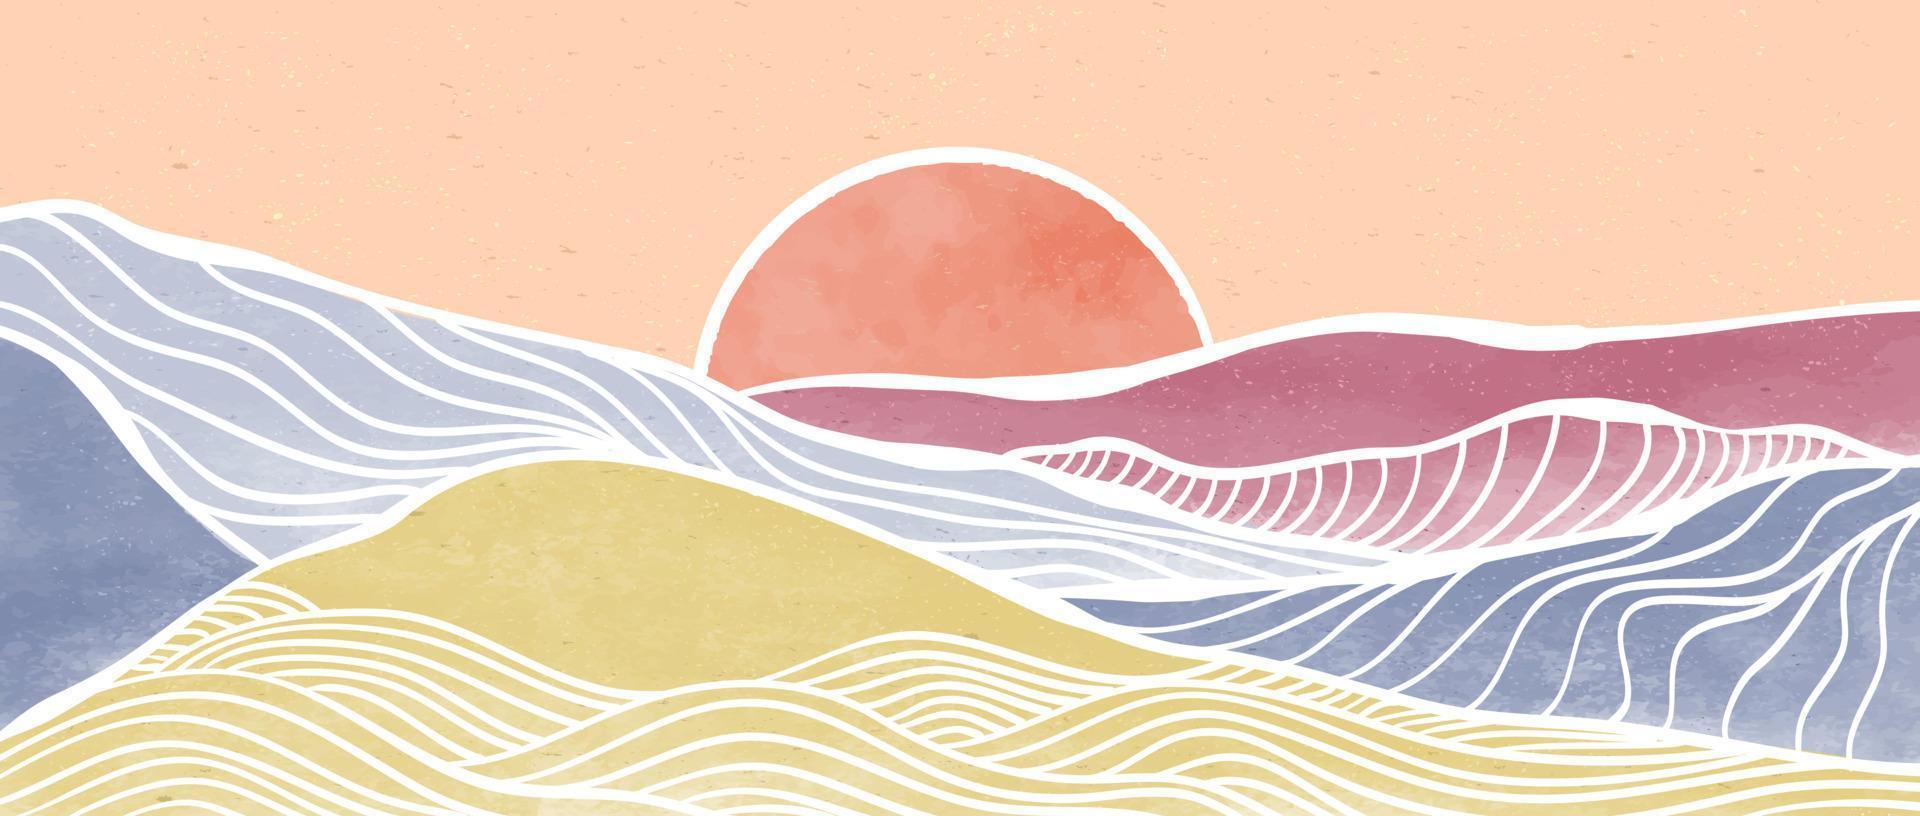 creatieve minimalistische moderne verf en line art print. abstracte oceaangolf en berg hedendaagse esthetische achtergronden landschappen. met zee, skyline, golf. vectorillustraties vector